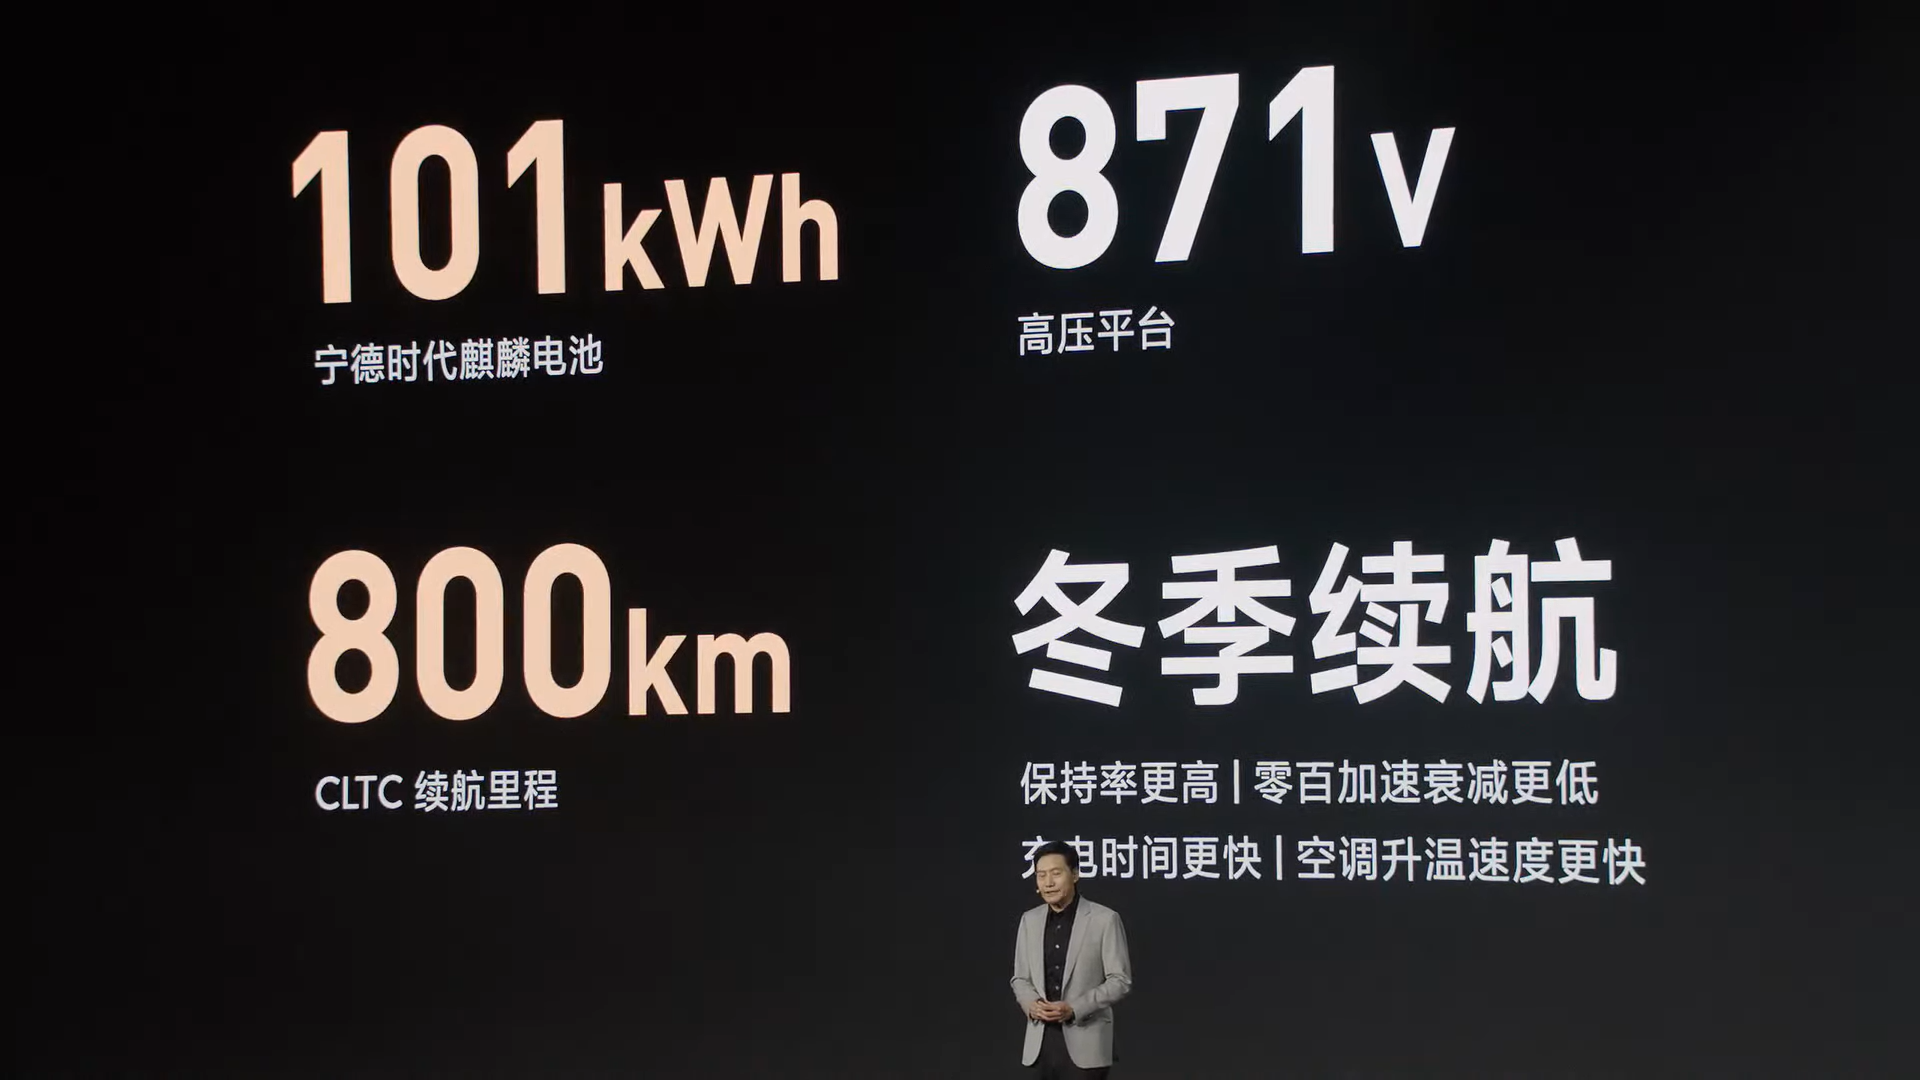 Nuevo Xiaomi Carro Eléctrico